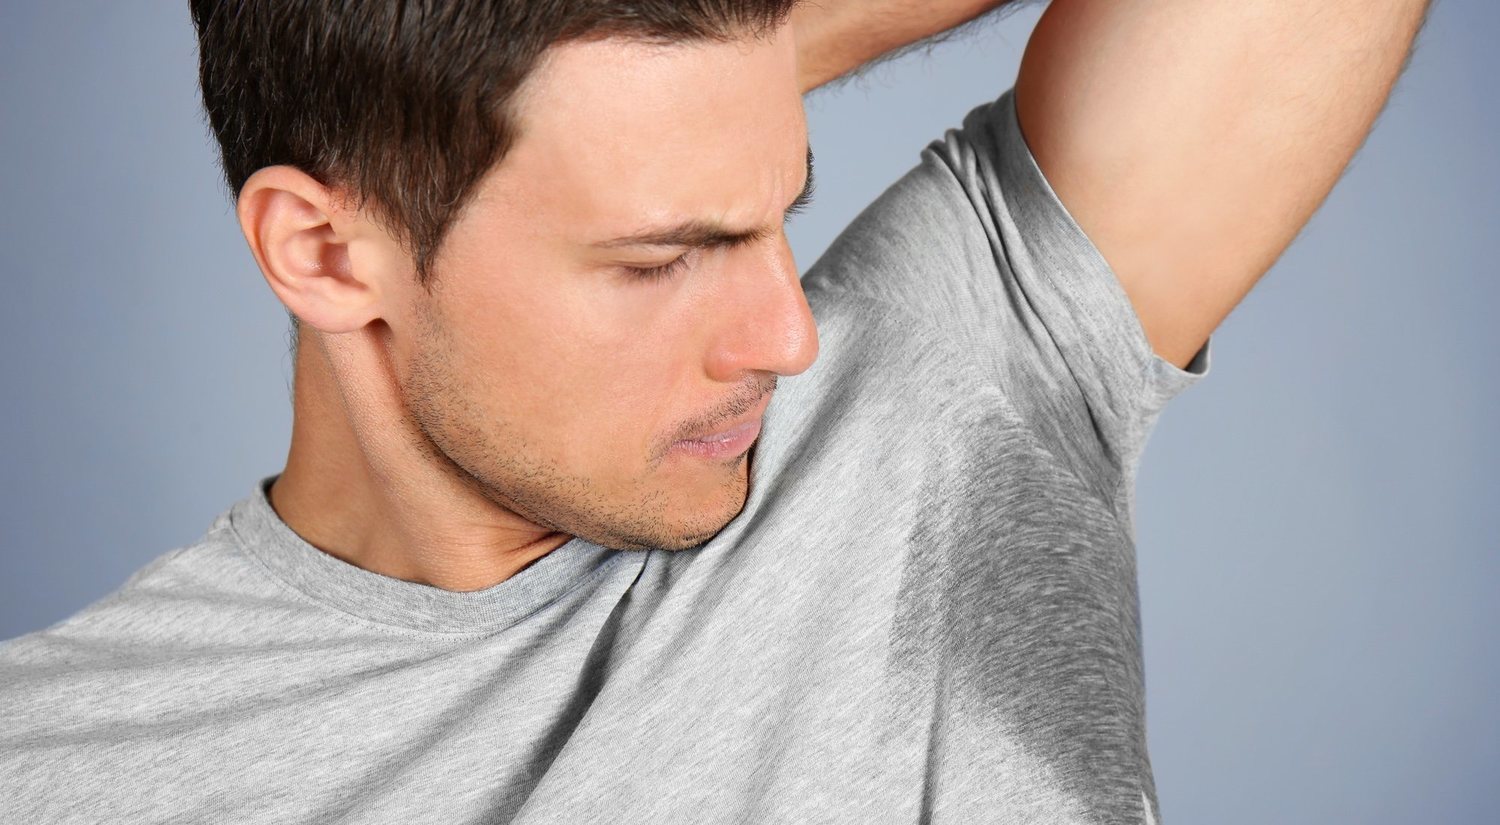 La hiperhidrosis o exceso de sudoración: qué es, formas de combatirlo y soluciones